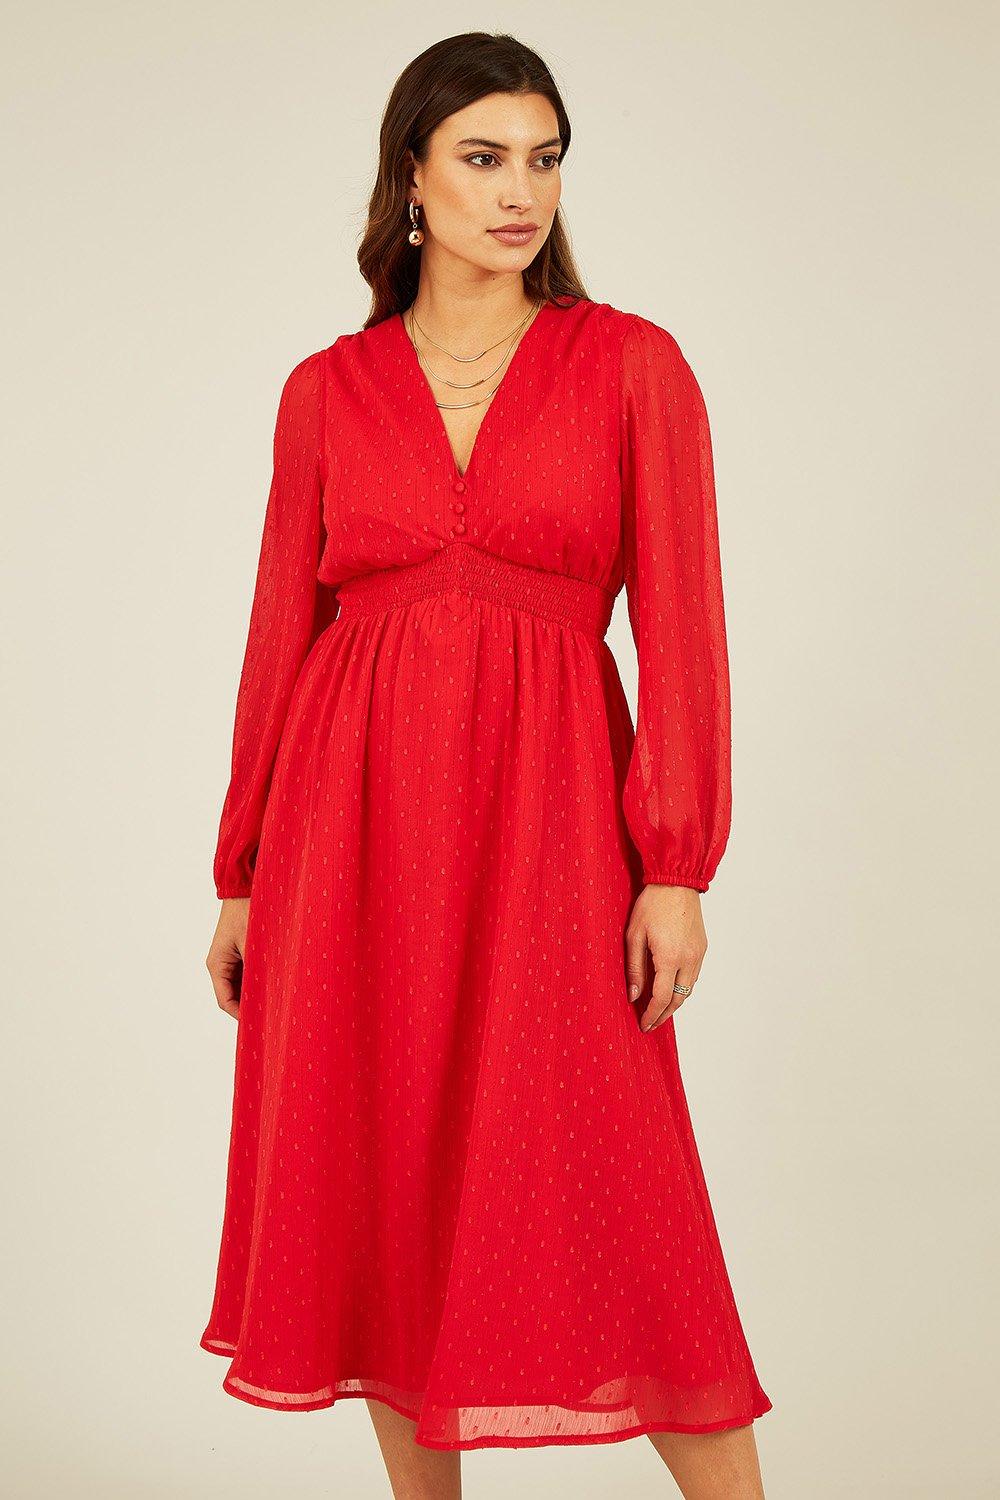 женское платье миди с v образным вырезом длинным рукавом Красное платье миди с длинными рукавами и эффектом металлик в стиле Добби Yumi, красный